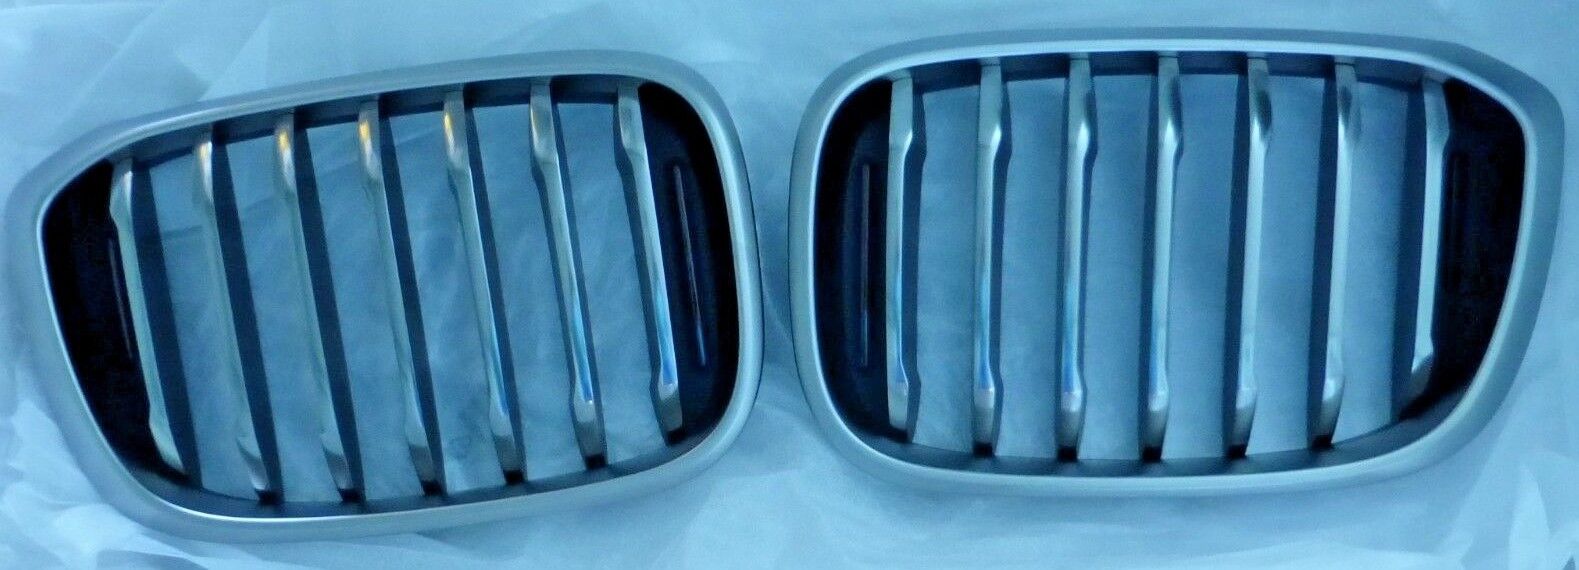 BMW OEM 2018+ G01 X3 2019+ G02 X4 M Sport Chrome Front Grille Pair Cerium Grey